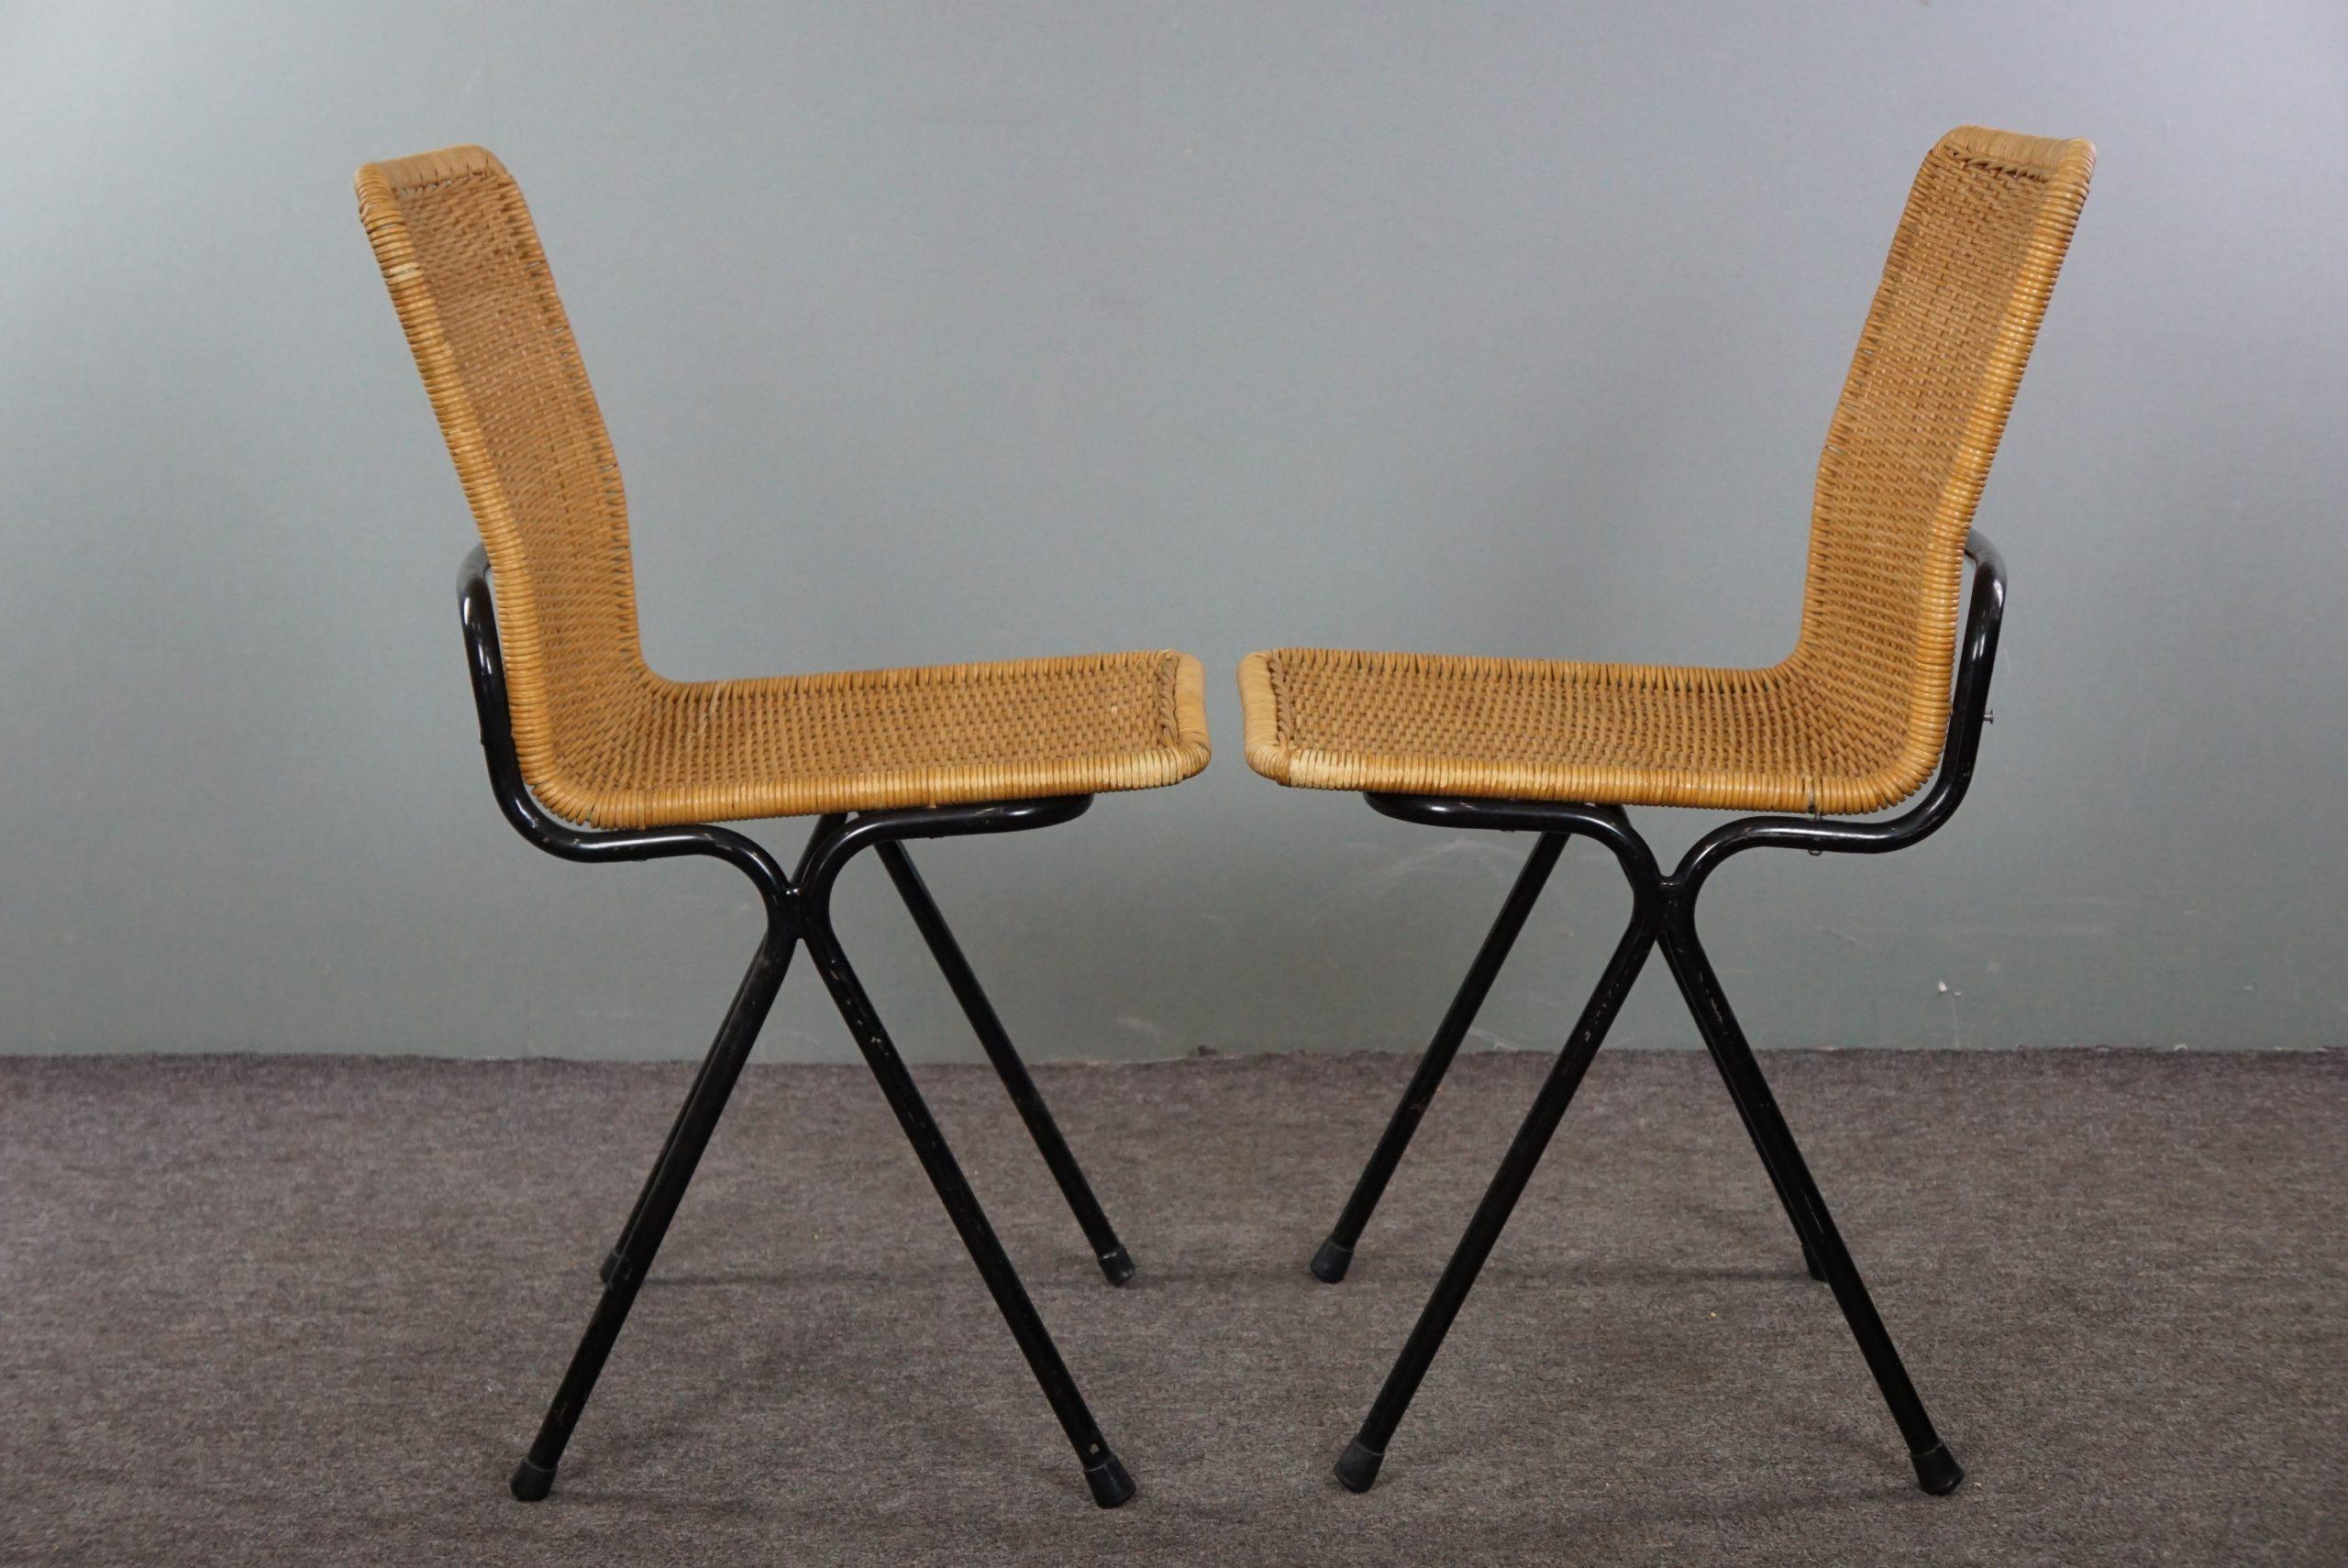 Offert par Thijs, cet ensemble de deux chaises design en rotin vintage, Dirk van Sliedrecht, années 1960. Ce bel ensemble est en bon état d'usage et s'intègre parfaitement dans presque tous les styles d'intérieur. Ces chaises sont également